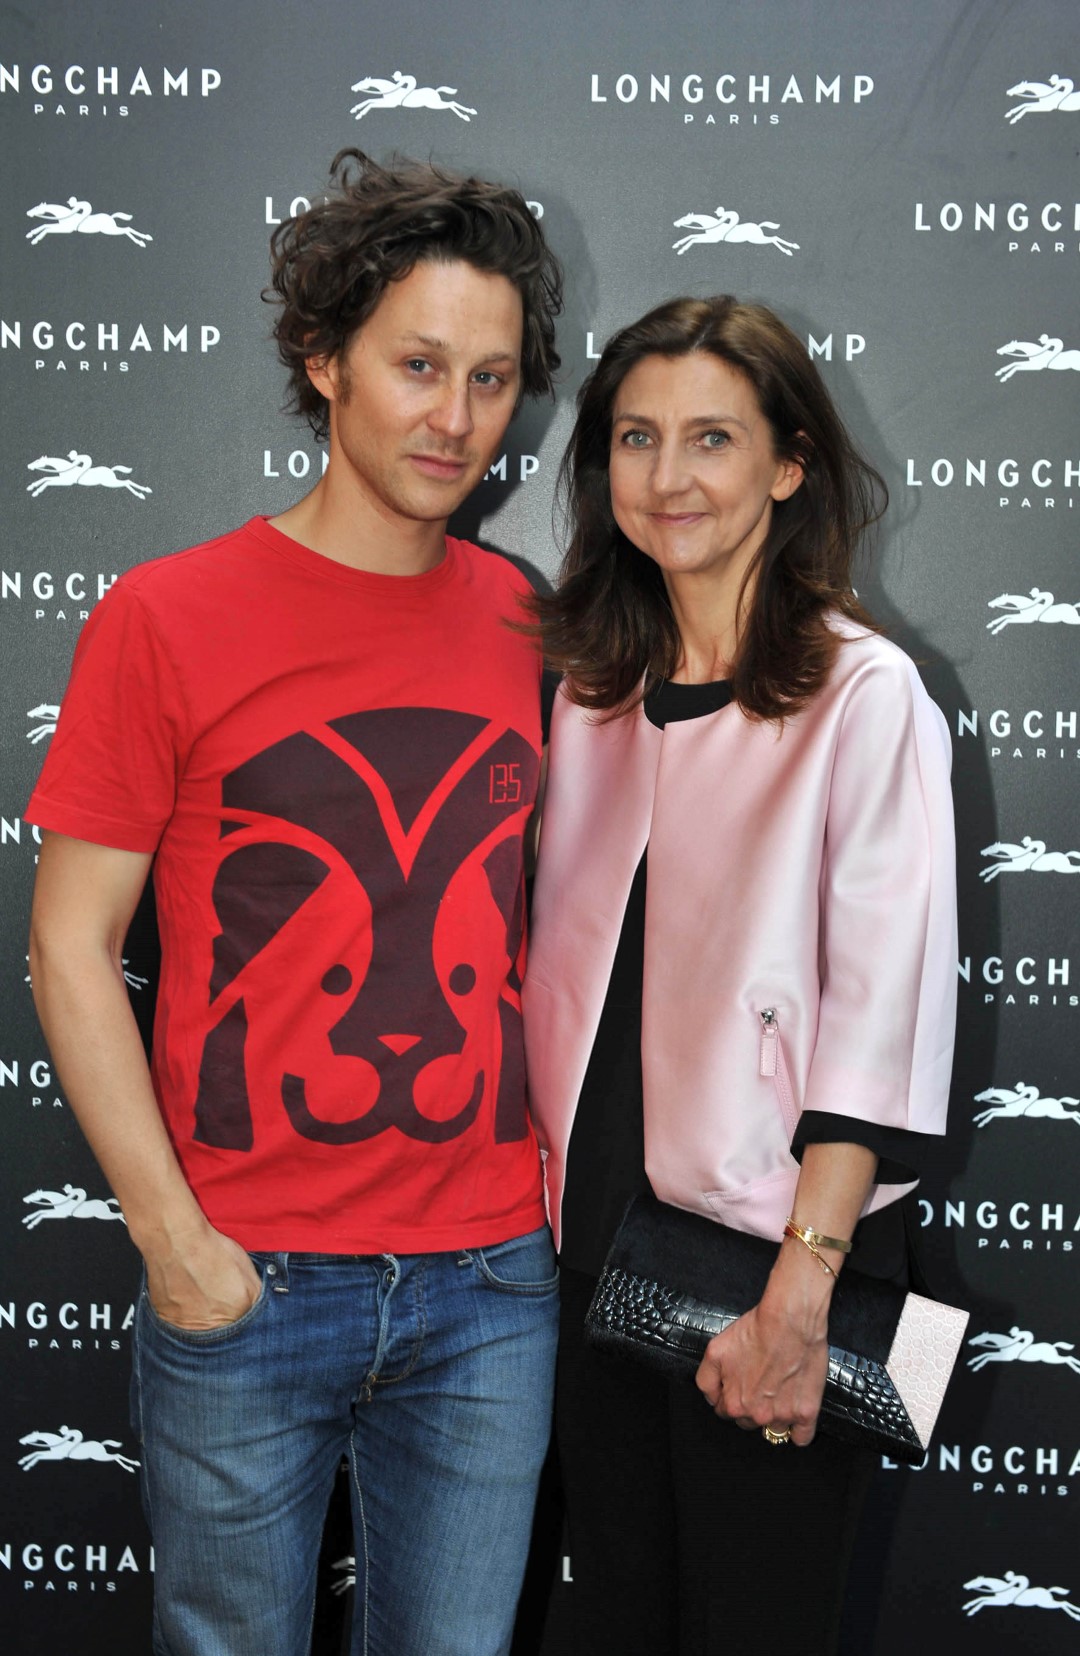 Pitti Uomo Giugno 2015 Firenze: Longchamp ha inaugurato il suo flagship store, le foto del party